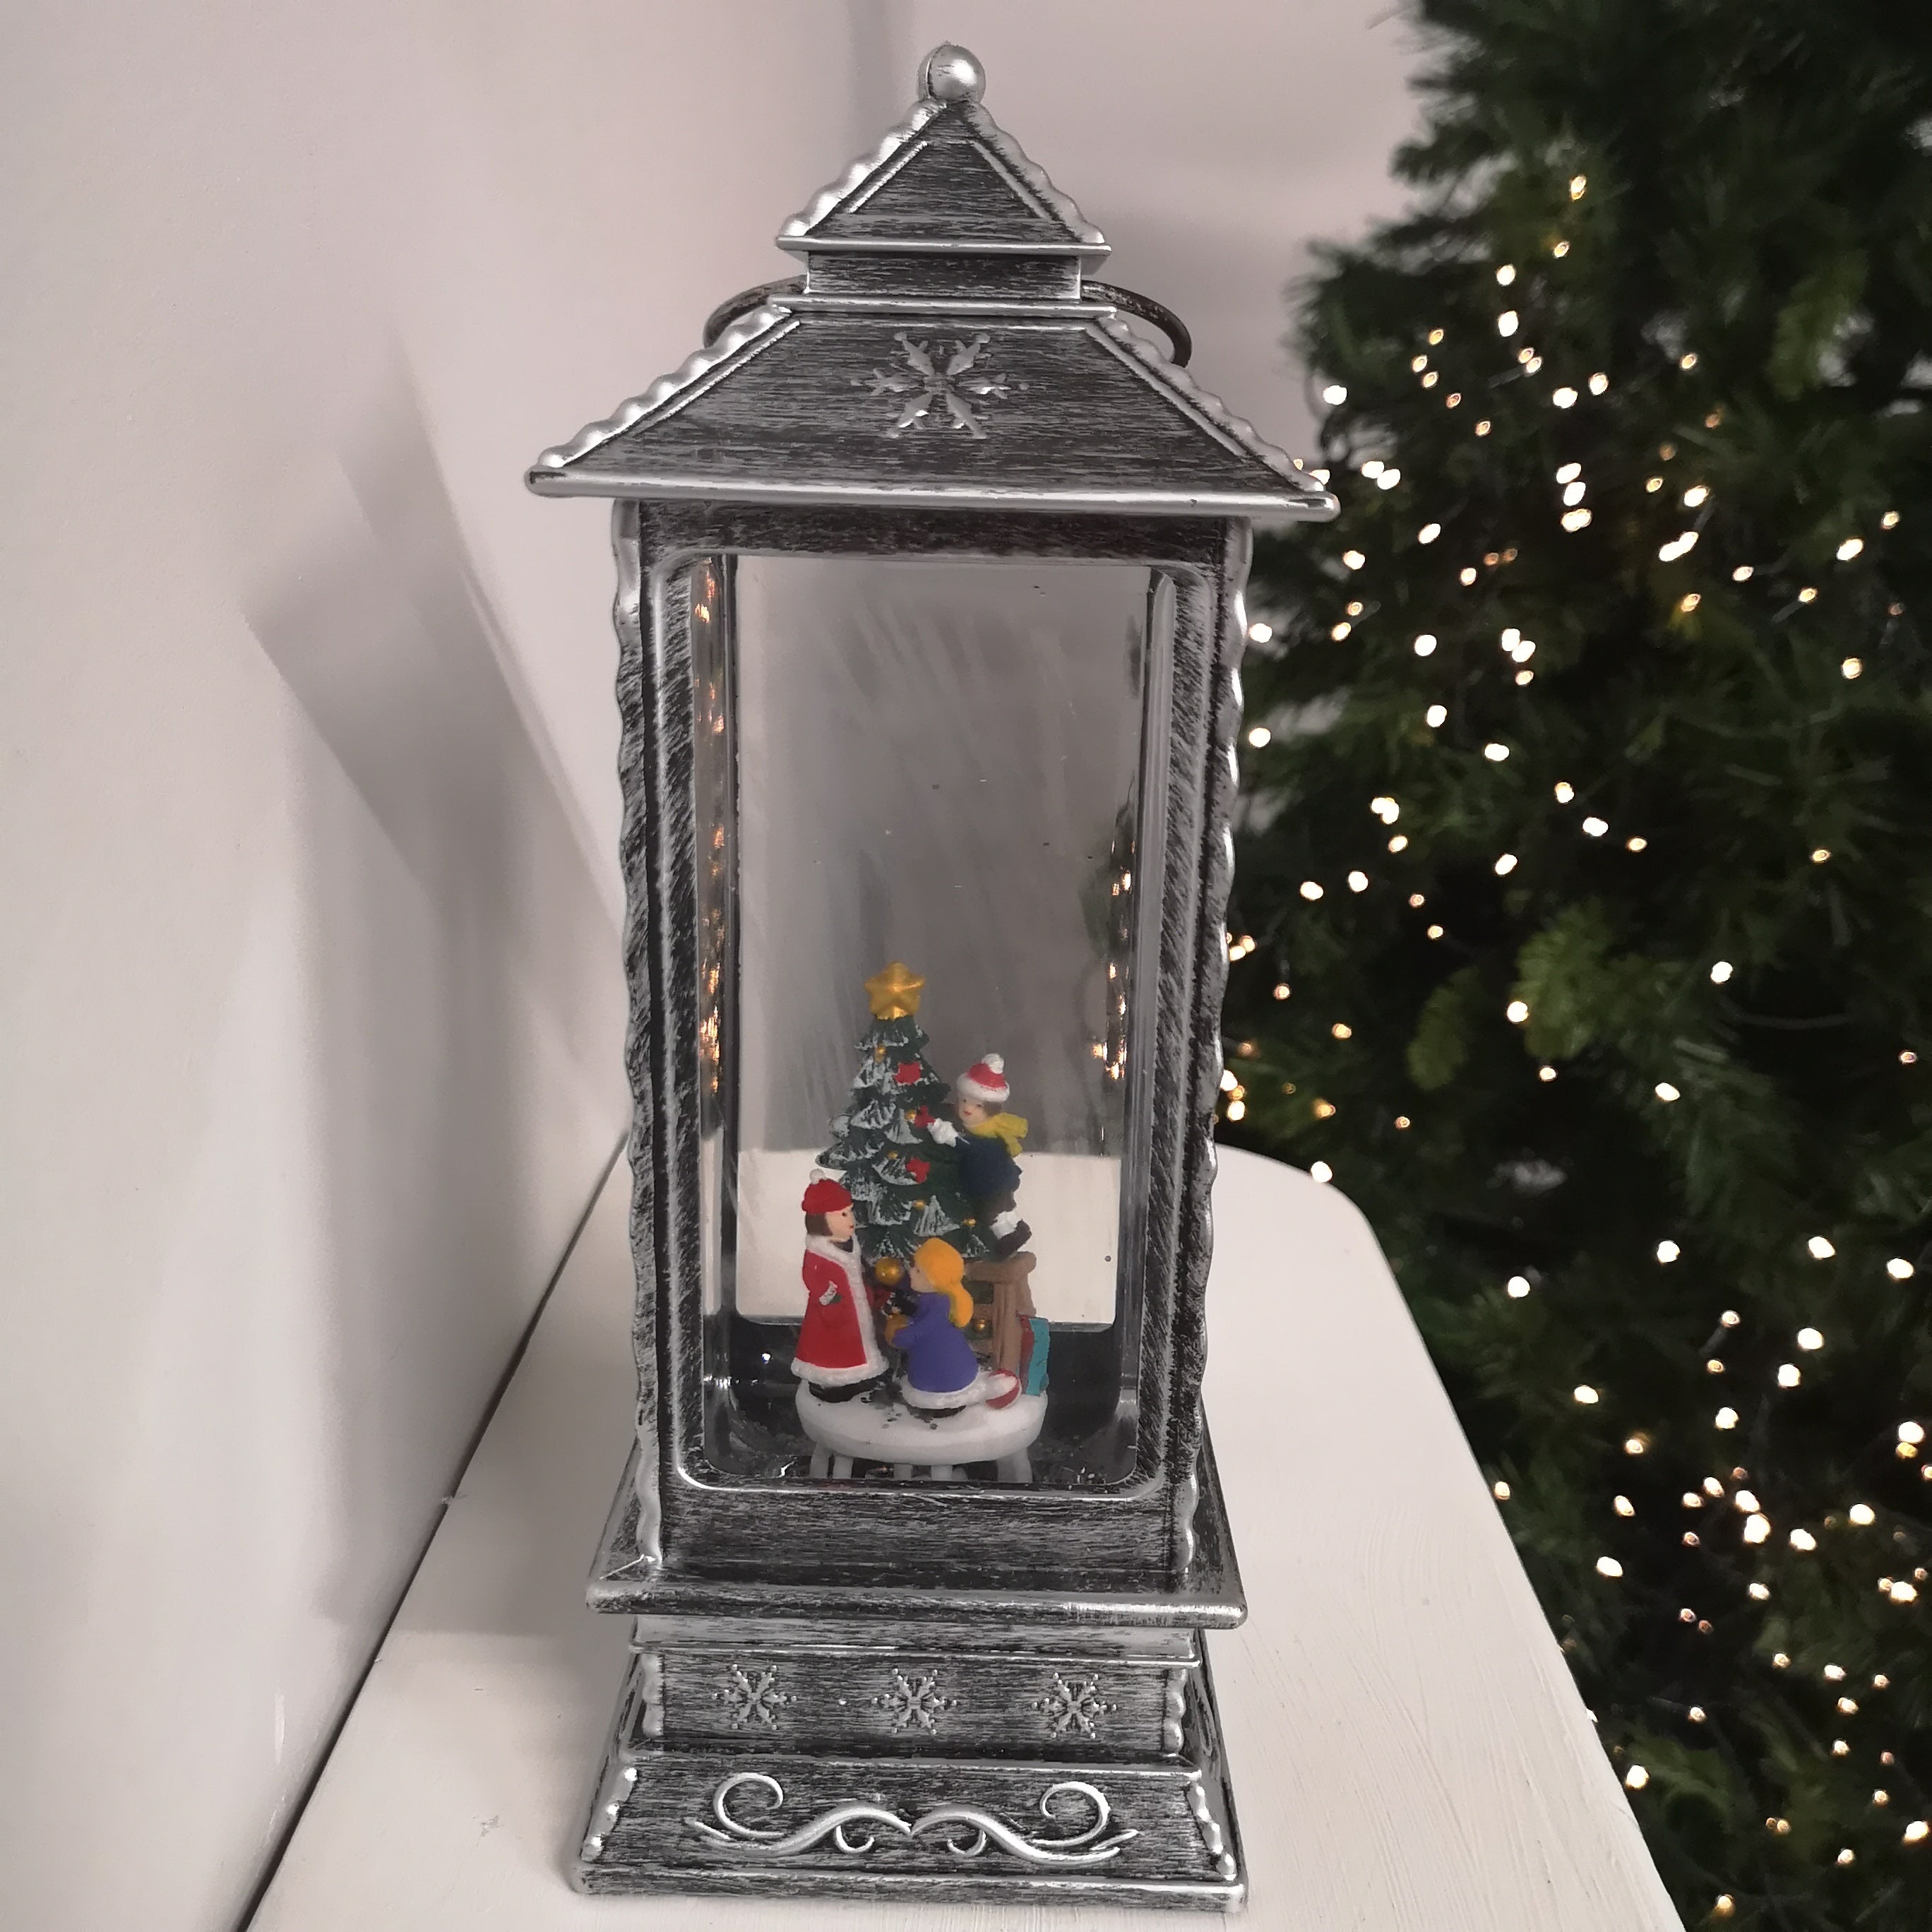 27cm Glitter Water Spinner Lantern - Warm White LED - Christmas Tree